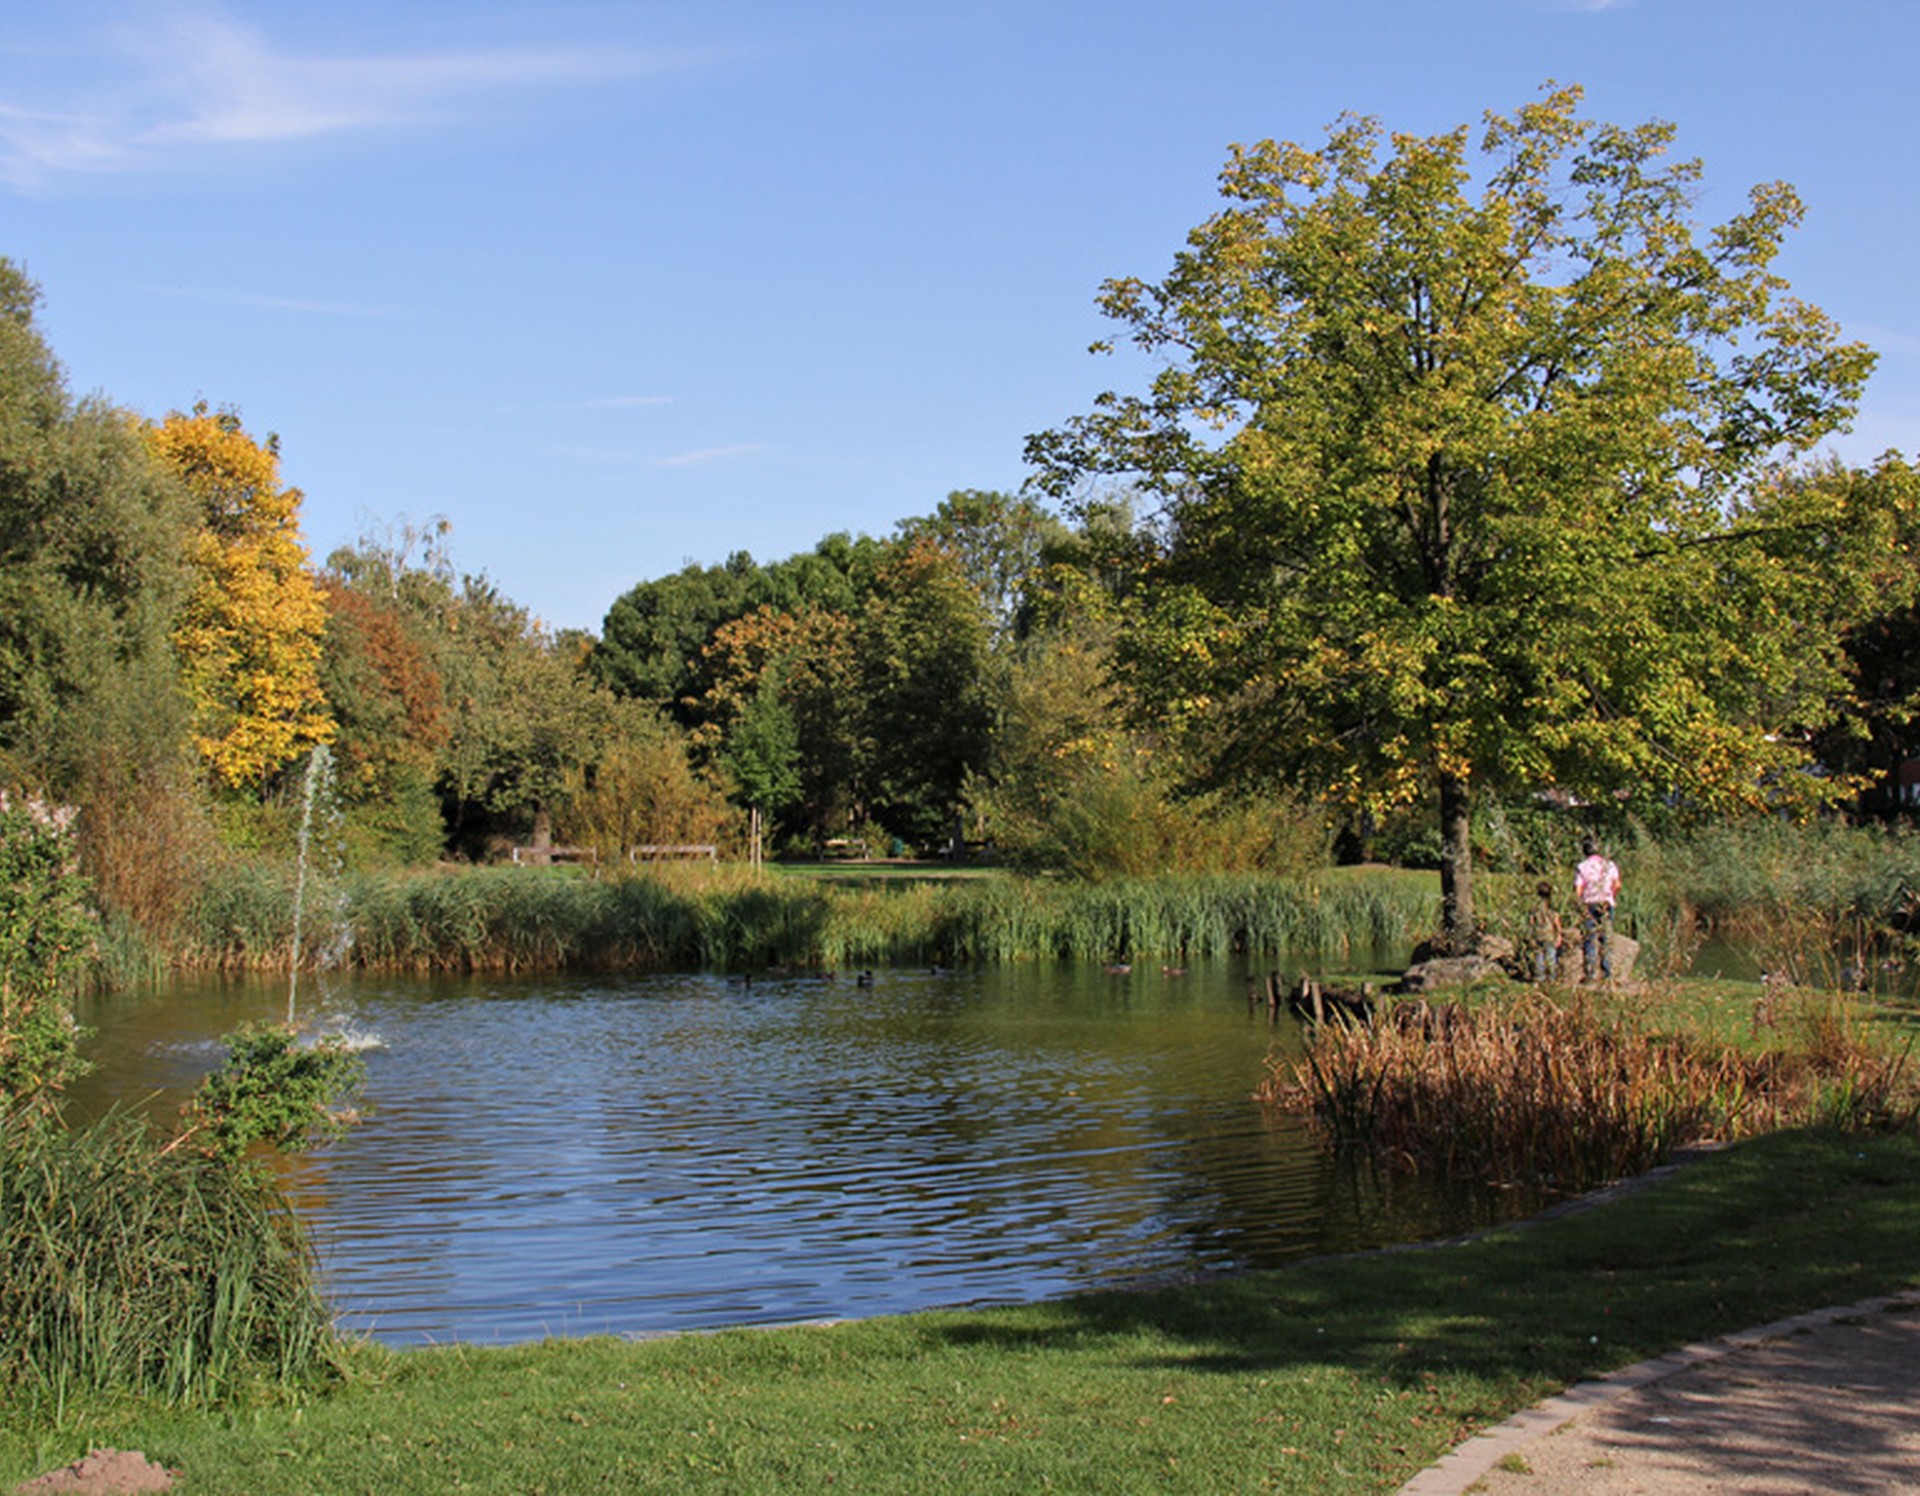 Ein Teich am Mehrgenerationengarten Lippstadt. Links befindet sich eine Fontaine. Auf einer kleinen Halbinsel steht ein Erwachsener mit einem Kind vor einem Baum.